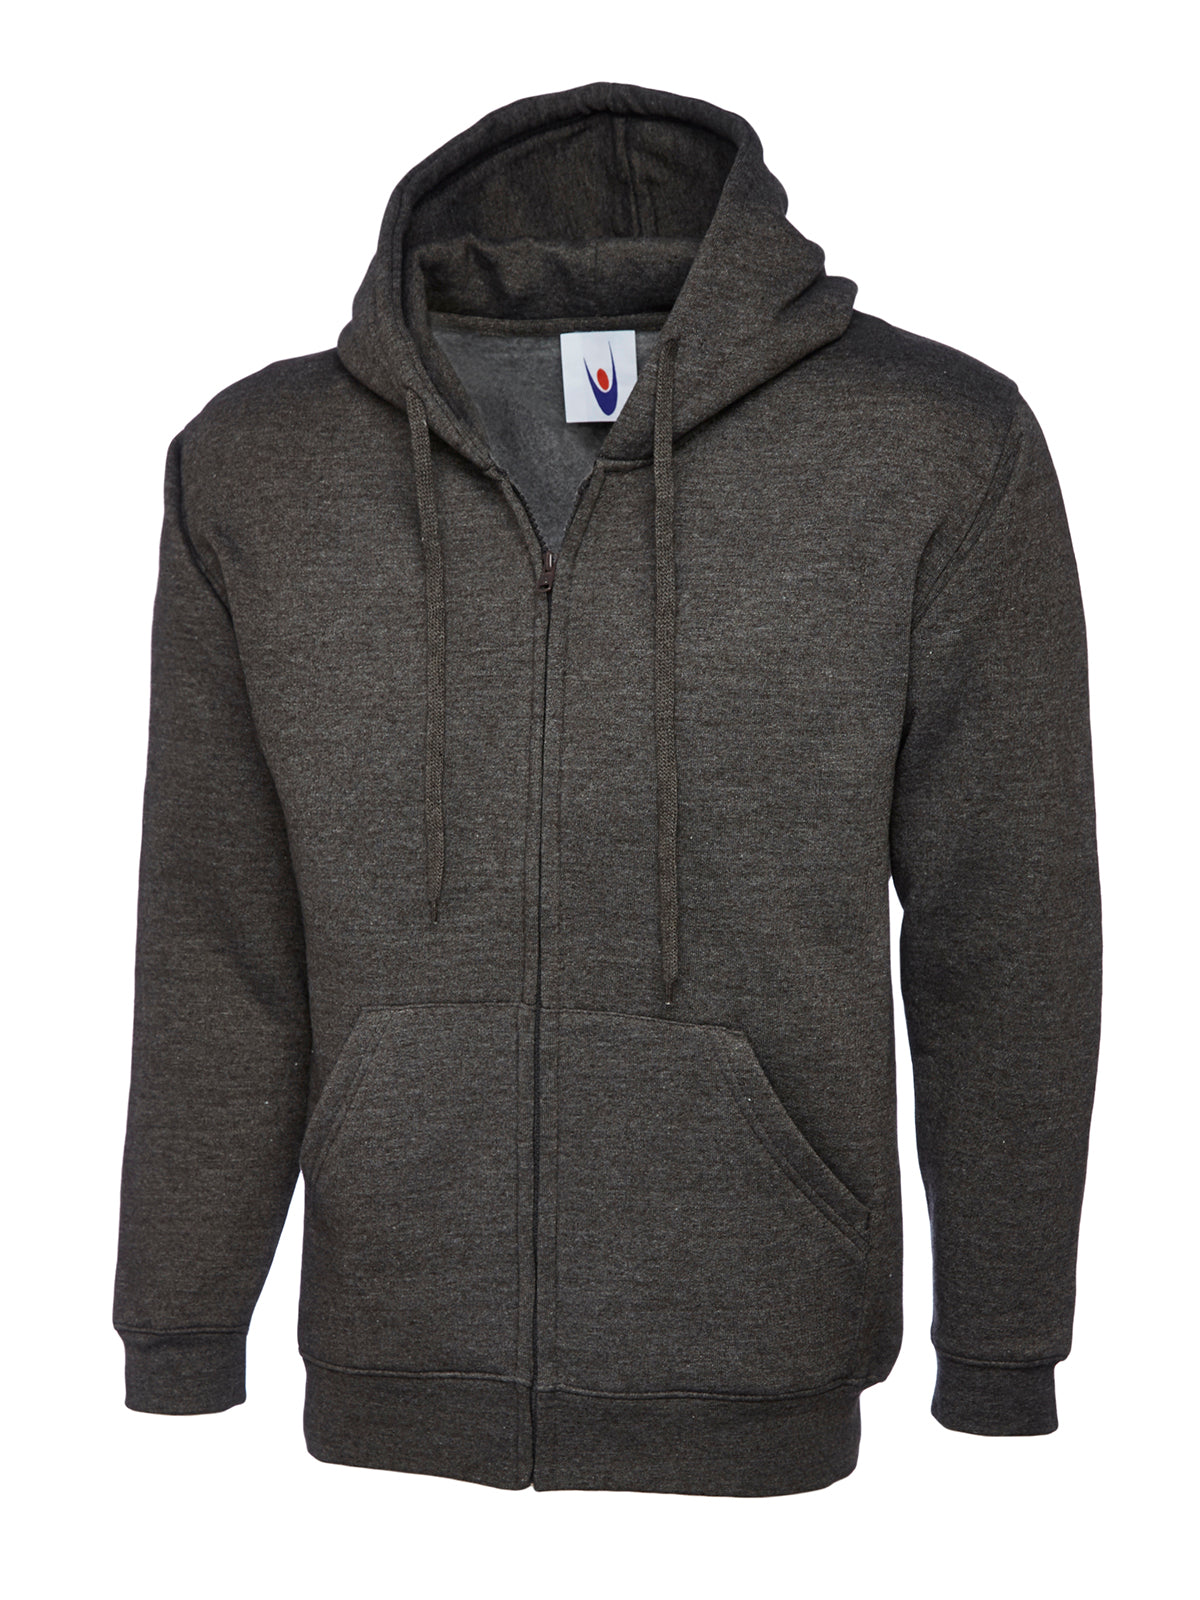 Uneek Adults Unisex Classic Full Zip Hooded Sweatshirt UC504 - Charcoal